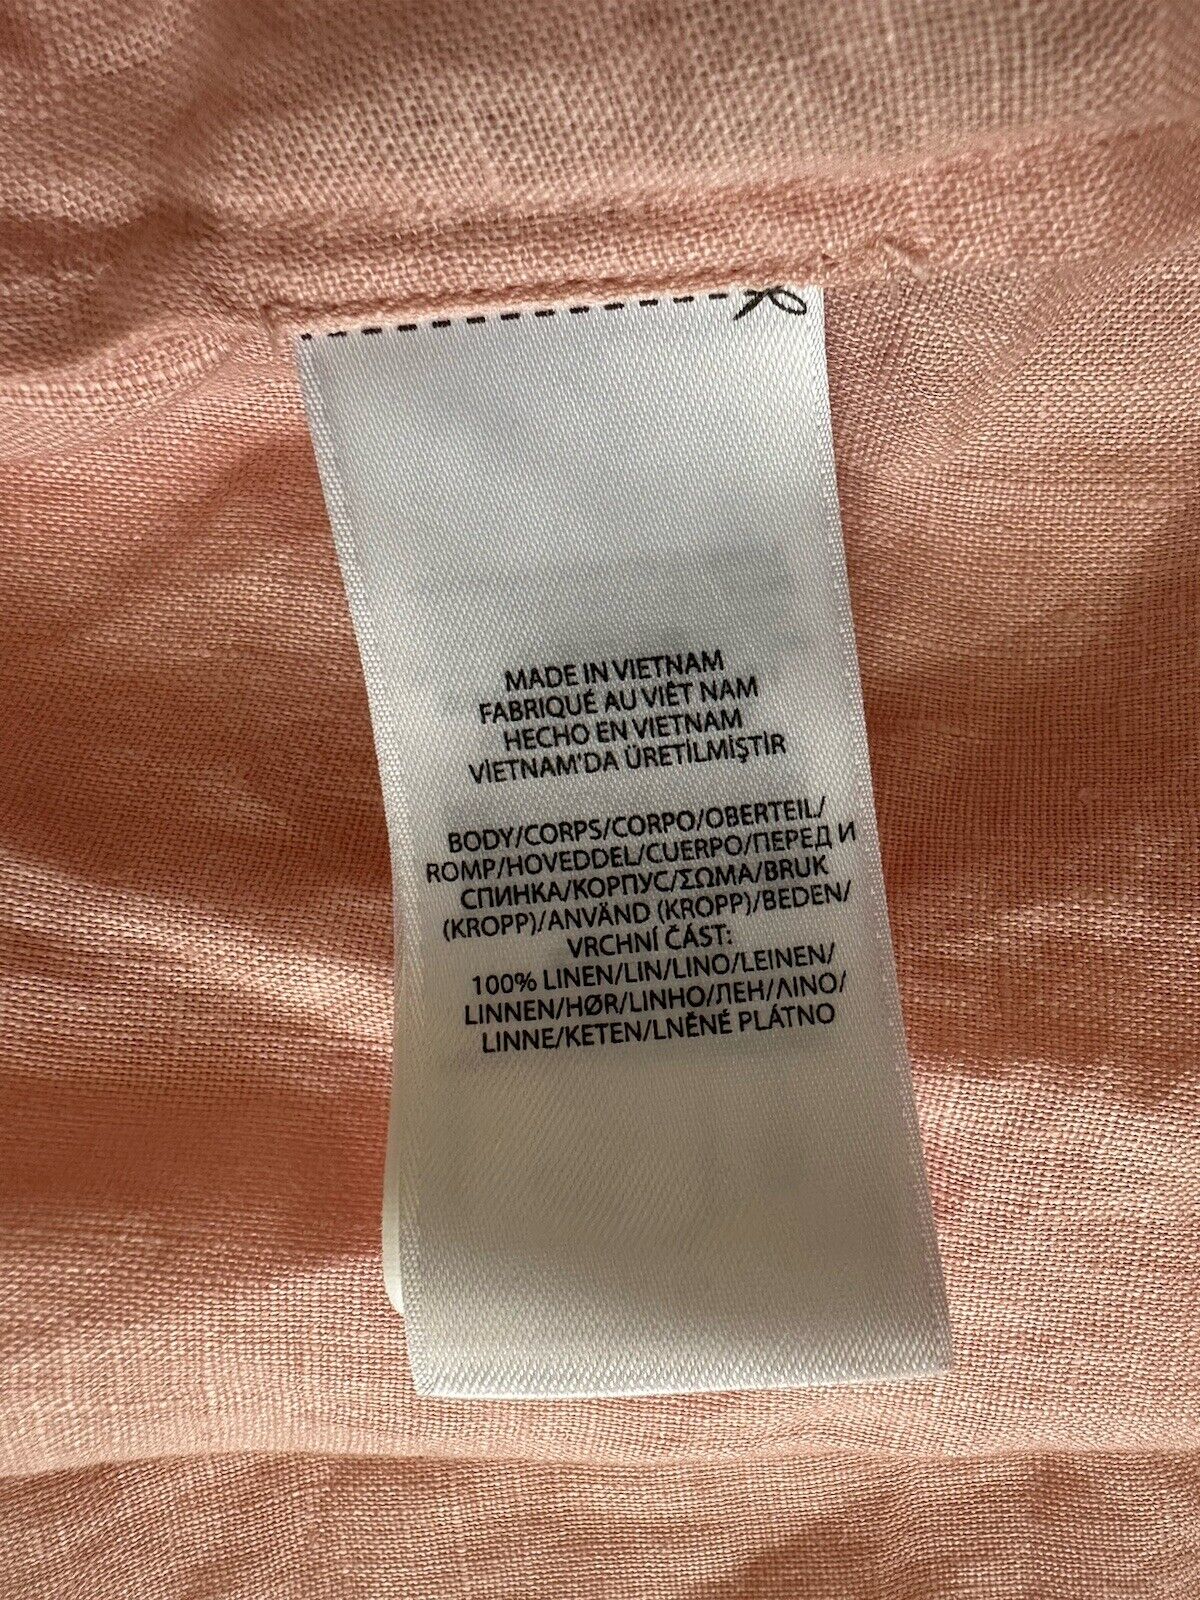 NWT $115 Lauren Ralph Lauren Women’s Linen Long Sleeve Shirt Pale Pink Large